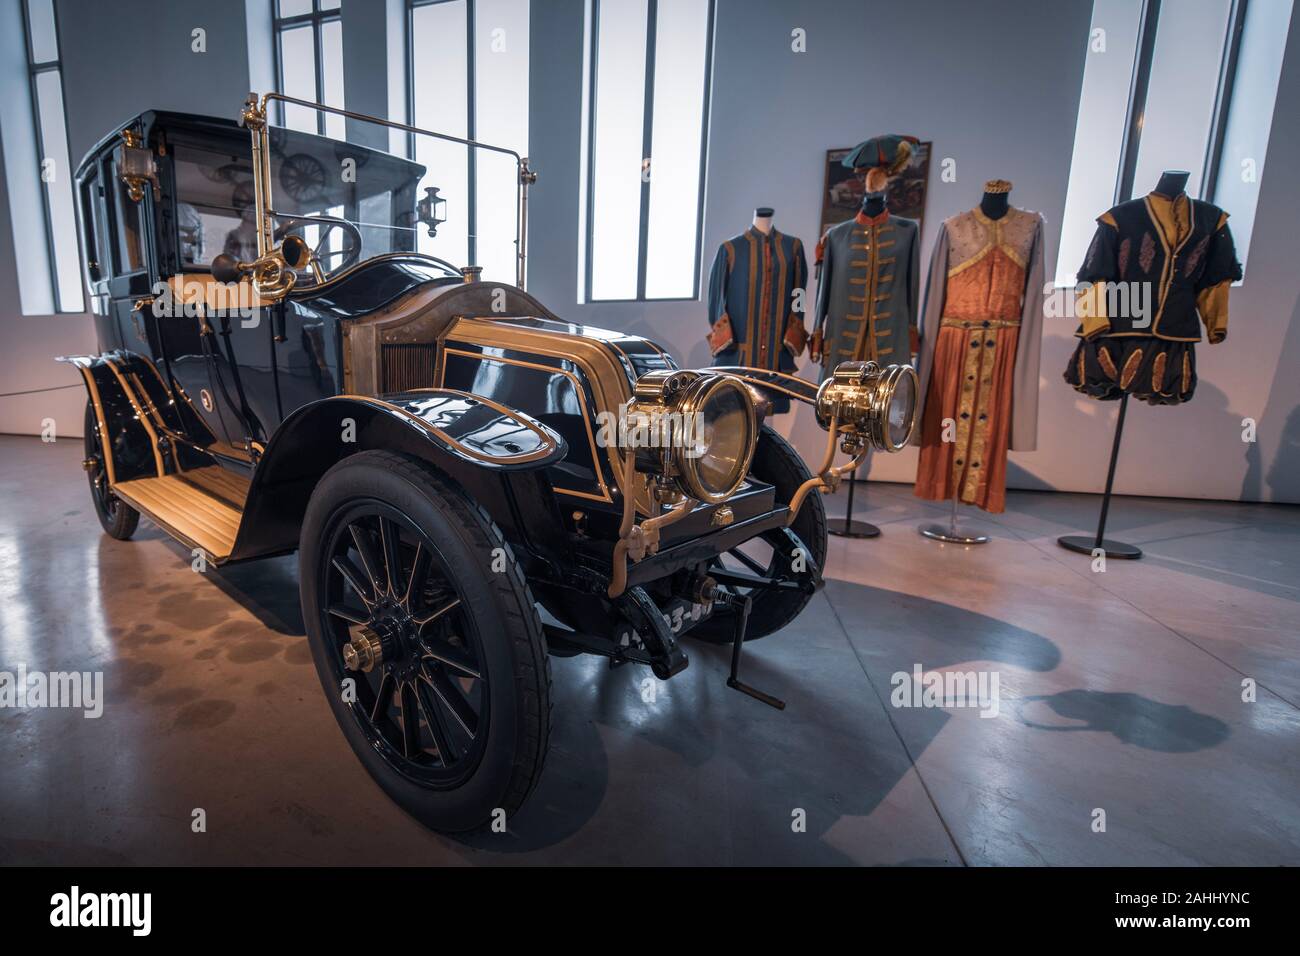 Dans museo automovilistico de Malaga vous pouvez trouver beaucoup de voiture classique intéressante et de voiture populaire célèbre comme Michael jackson , ... Banque D'Images